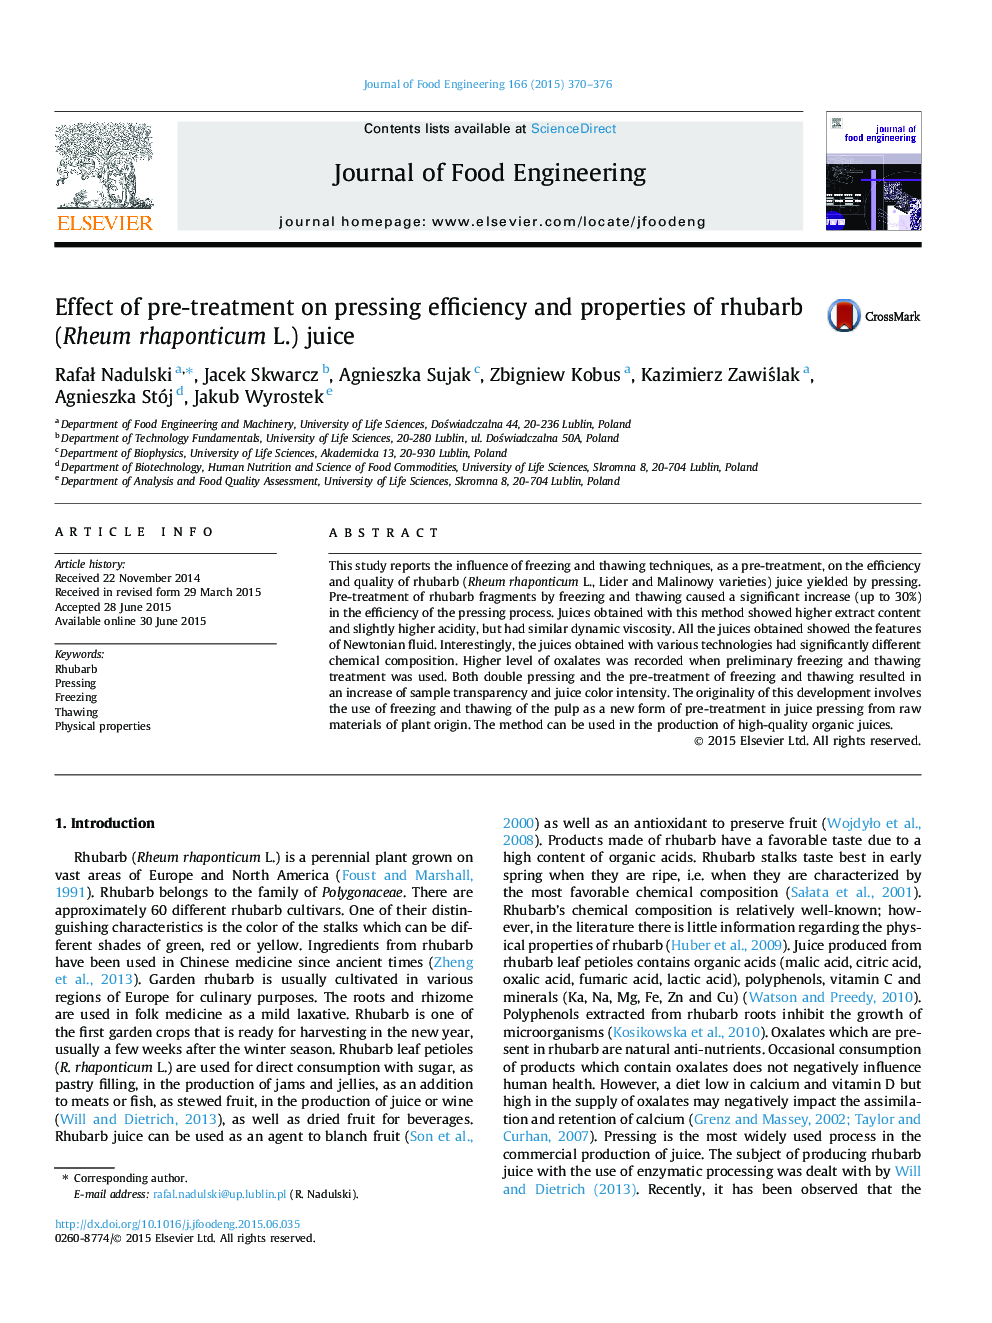 Effect of pre-treatment on pressing efficiency and properties of rhubarb (Rheum rhaponticum L.) juice